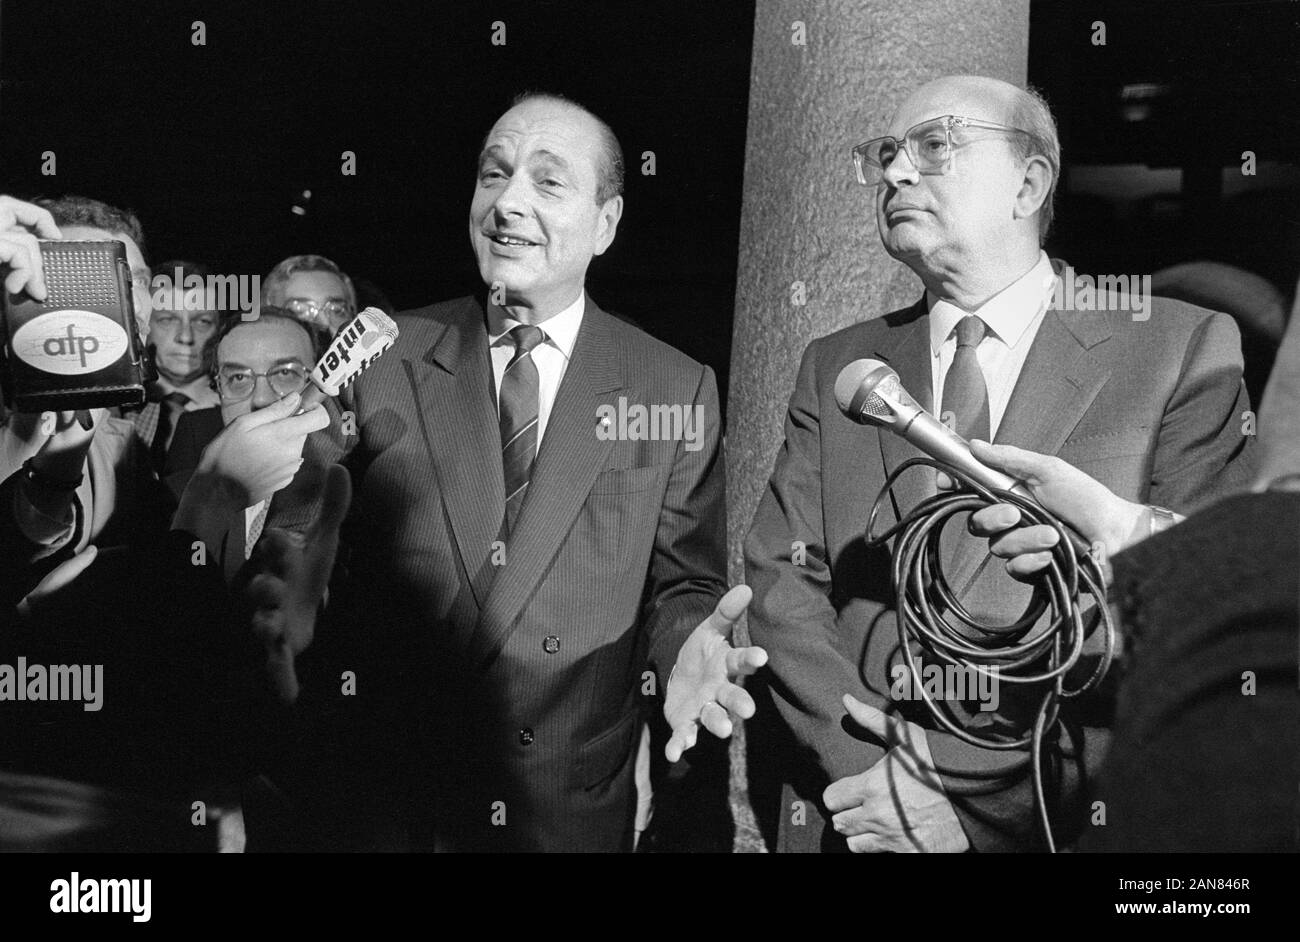 Milan (Italie), avril 1986, réunion entre Bettino Craxi, Premier ministre et secrétaire du PSI (Parti socialiste italien) avec Jacques Chirac, Premier Ministre de la République française Banque D'Images